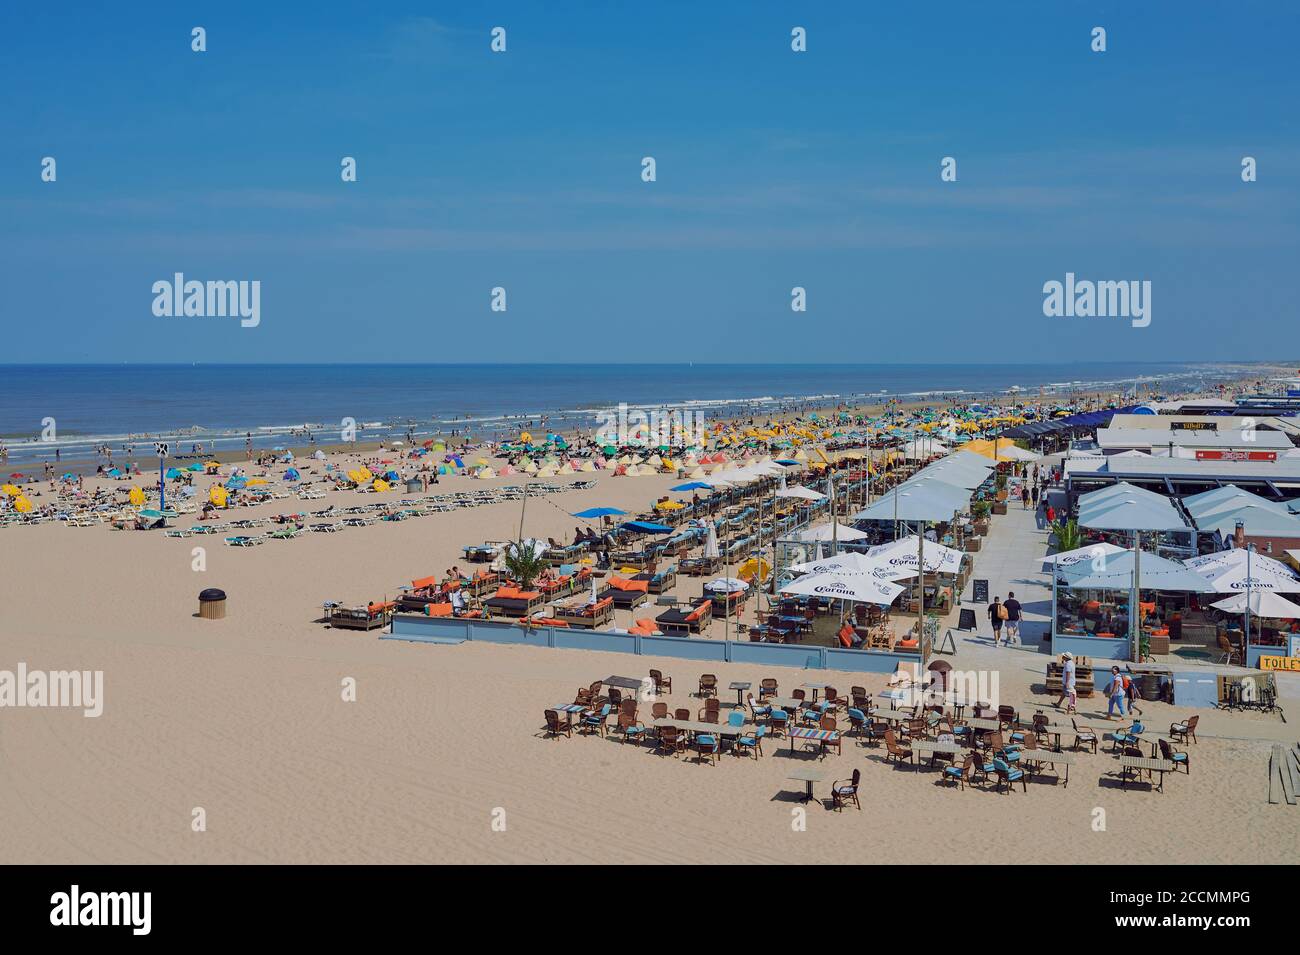 Scheveningen, Netherlands - August 10, 2020: people at the famous beach in Scheveningen, Netherlands. Stock Photo